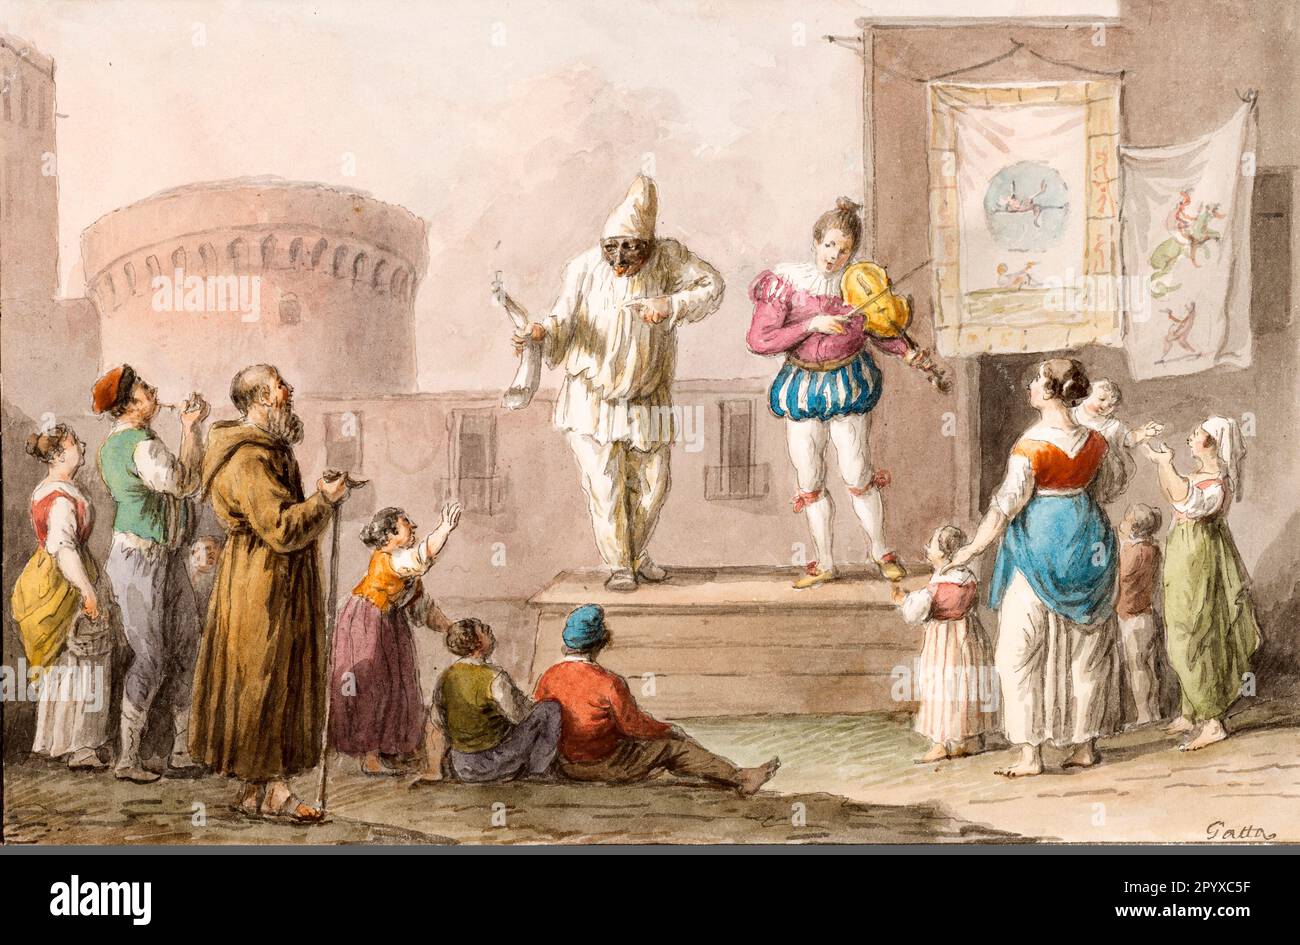 Italia Campania Napoli - esecutori di una Commedia dell'Arte di Saverio della Gatta nel 1827 Foto Stock